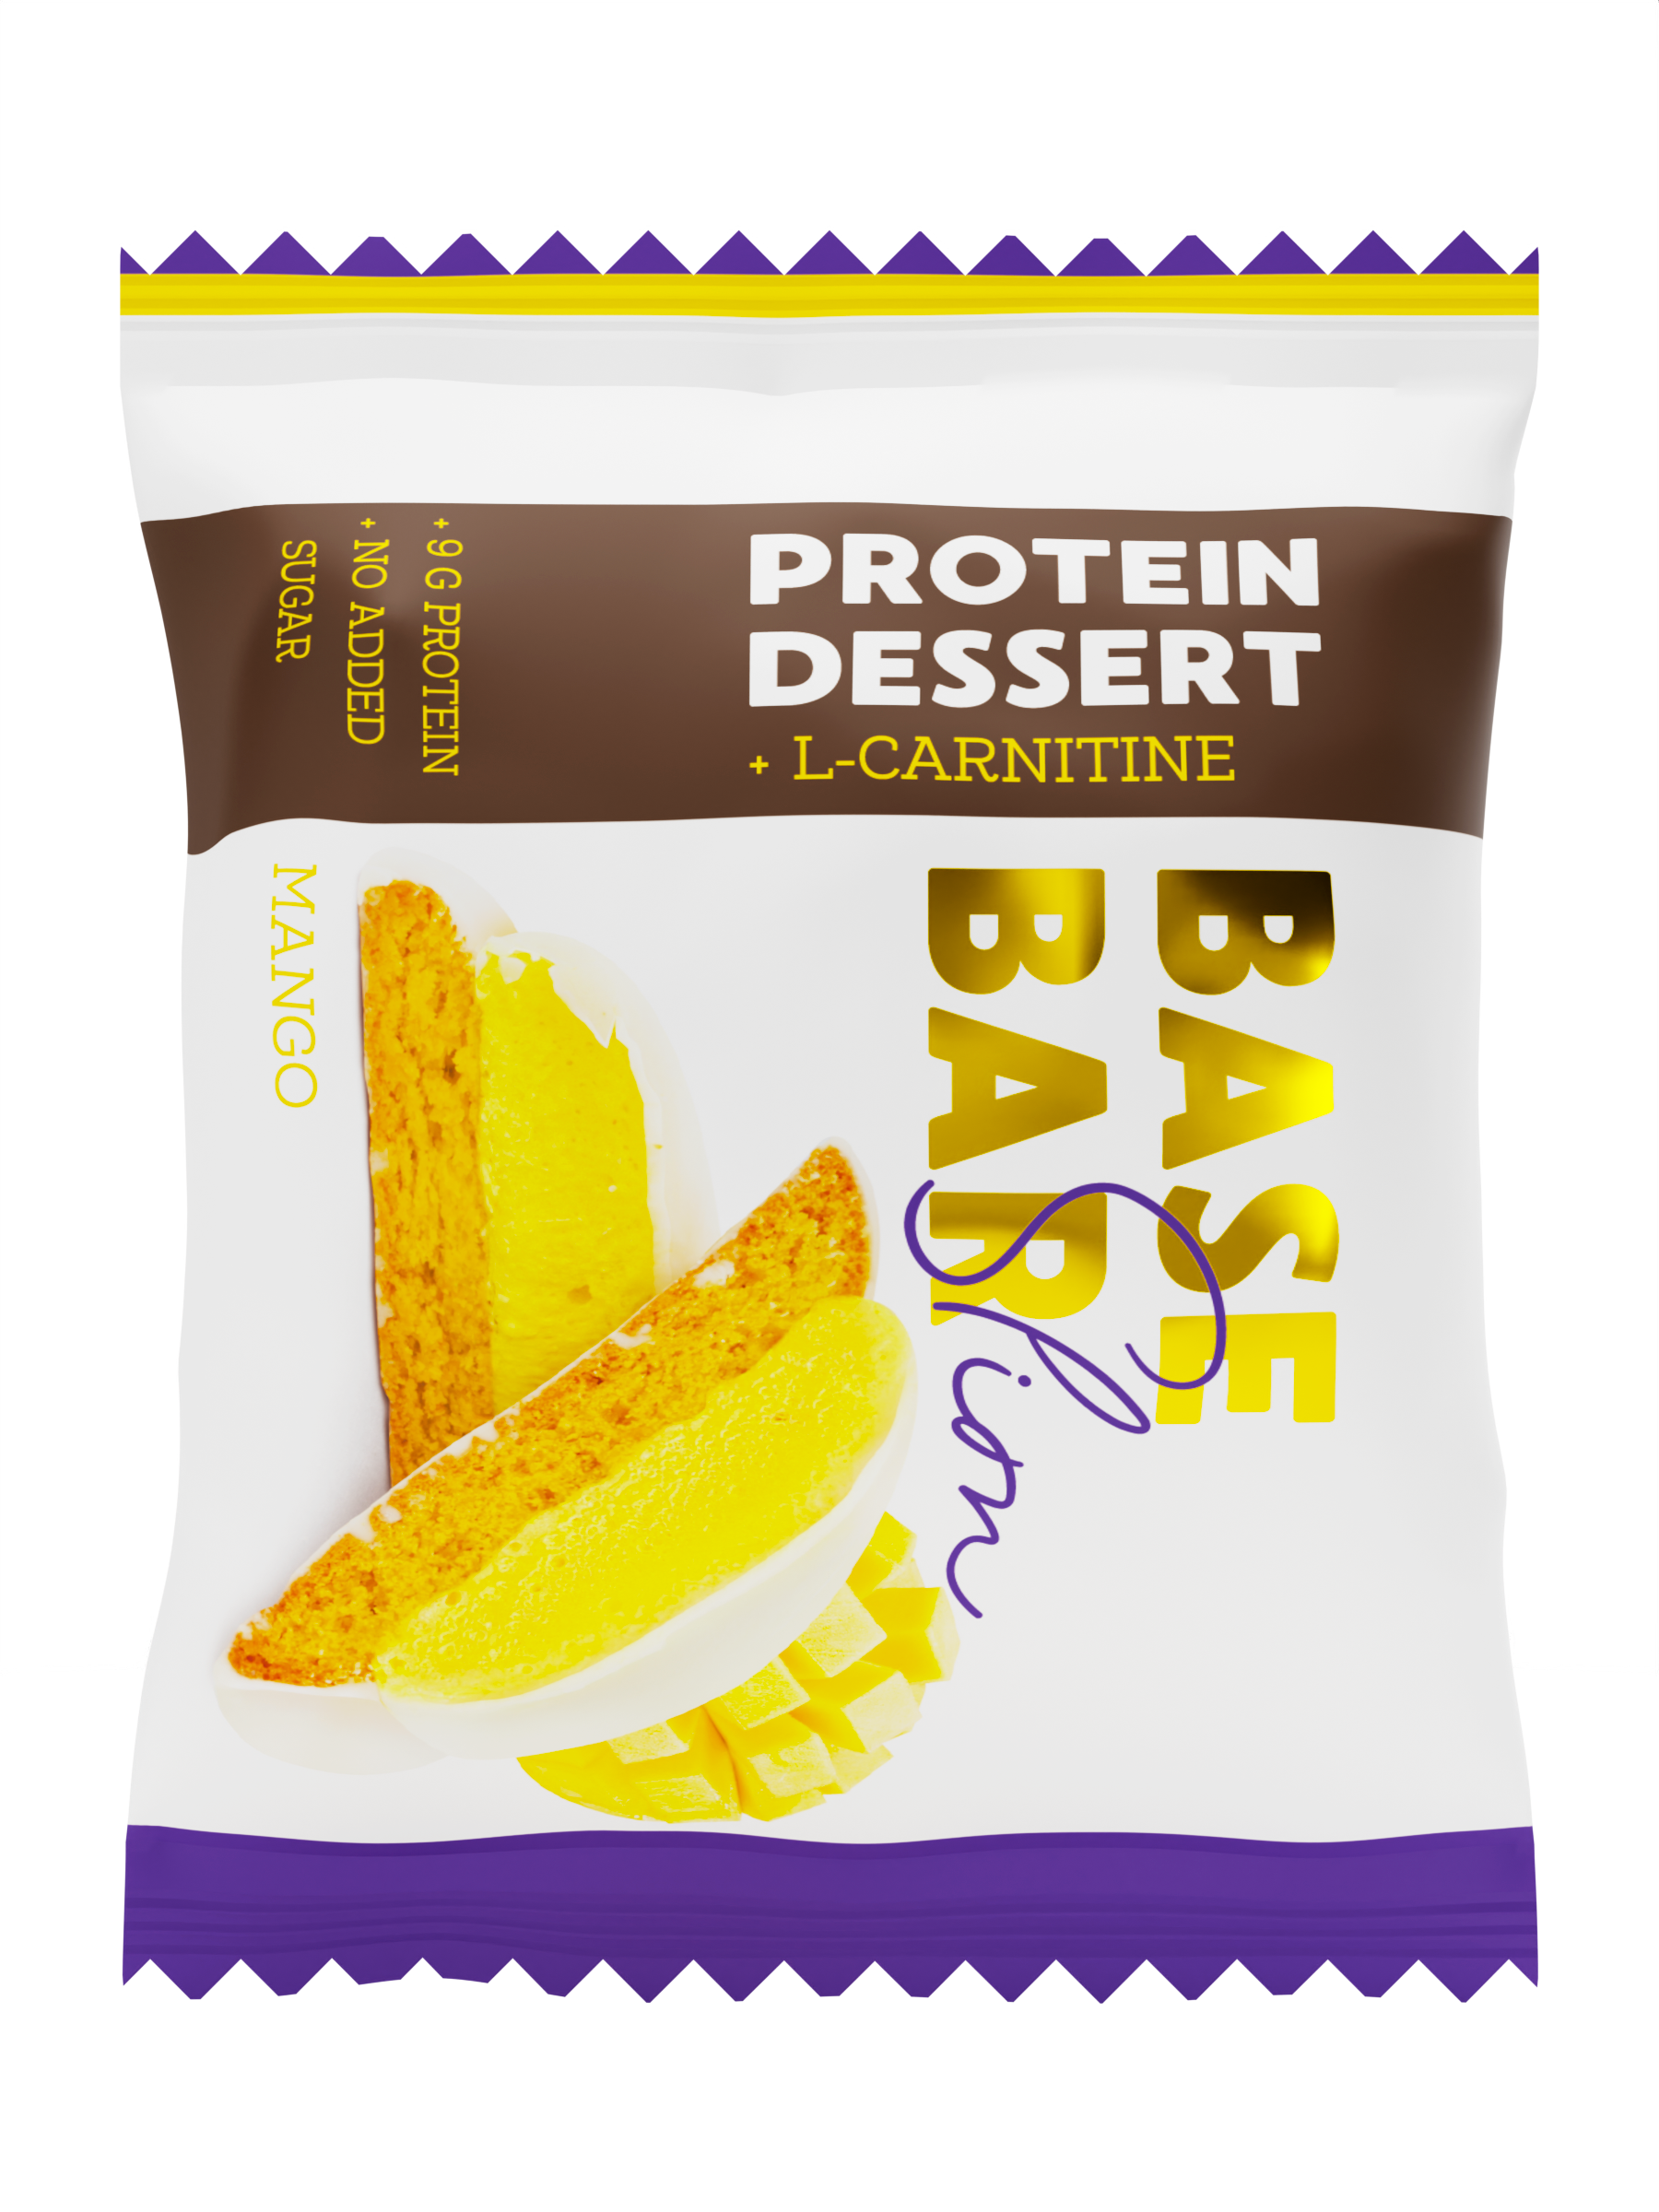 Печенье Base bar slim Protein dessert протеиновое, со вкусом манго, 45 г